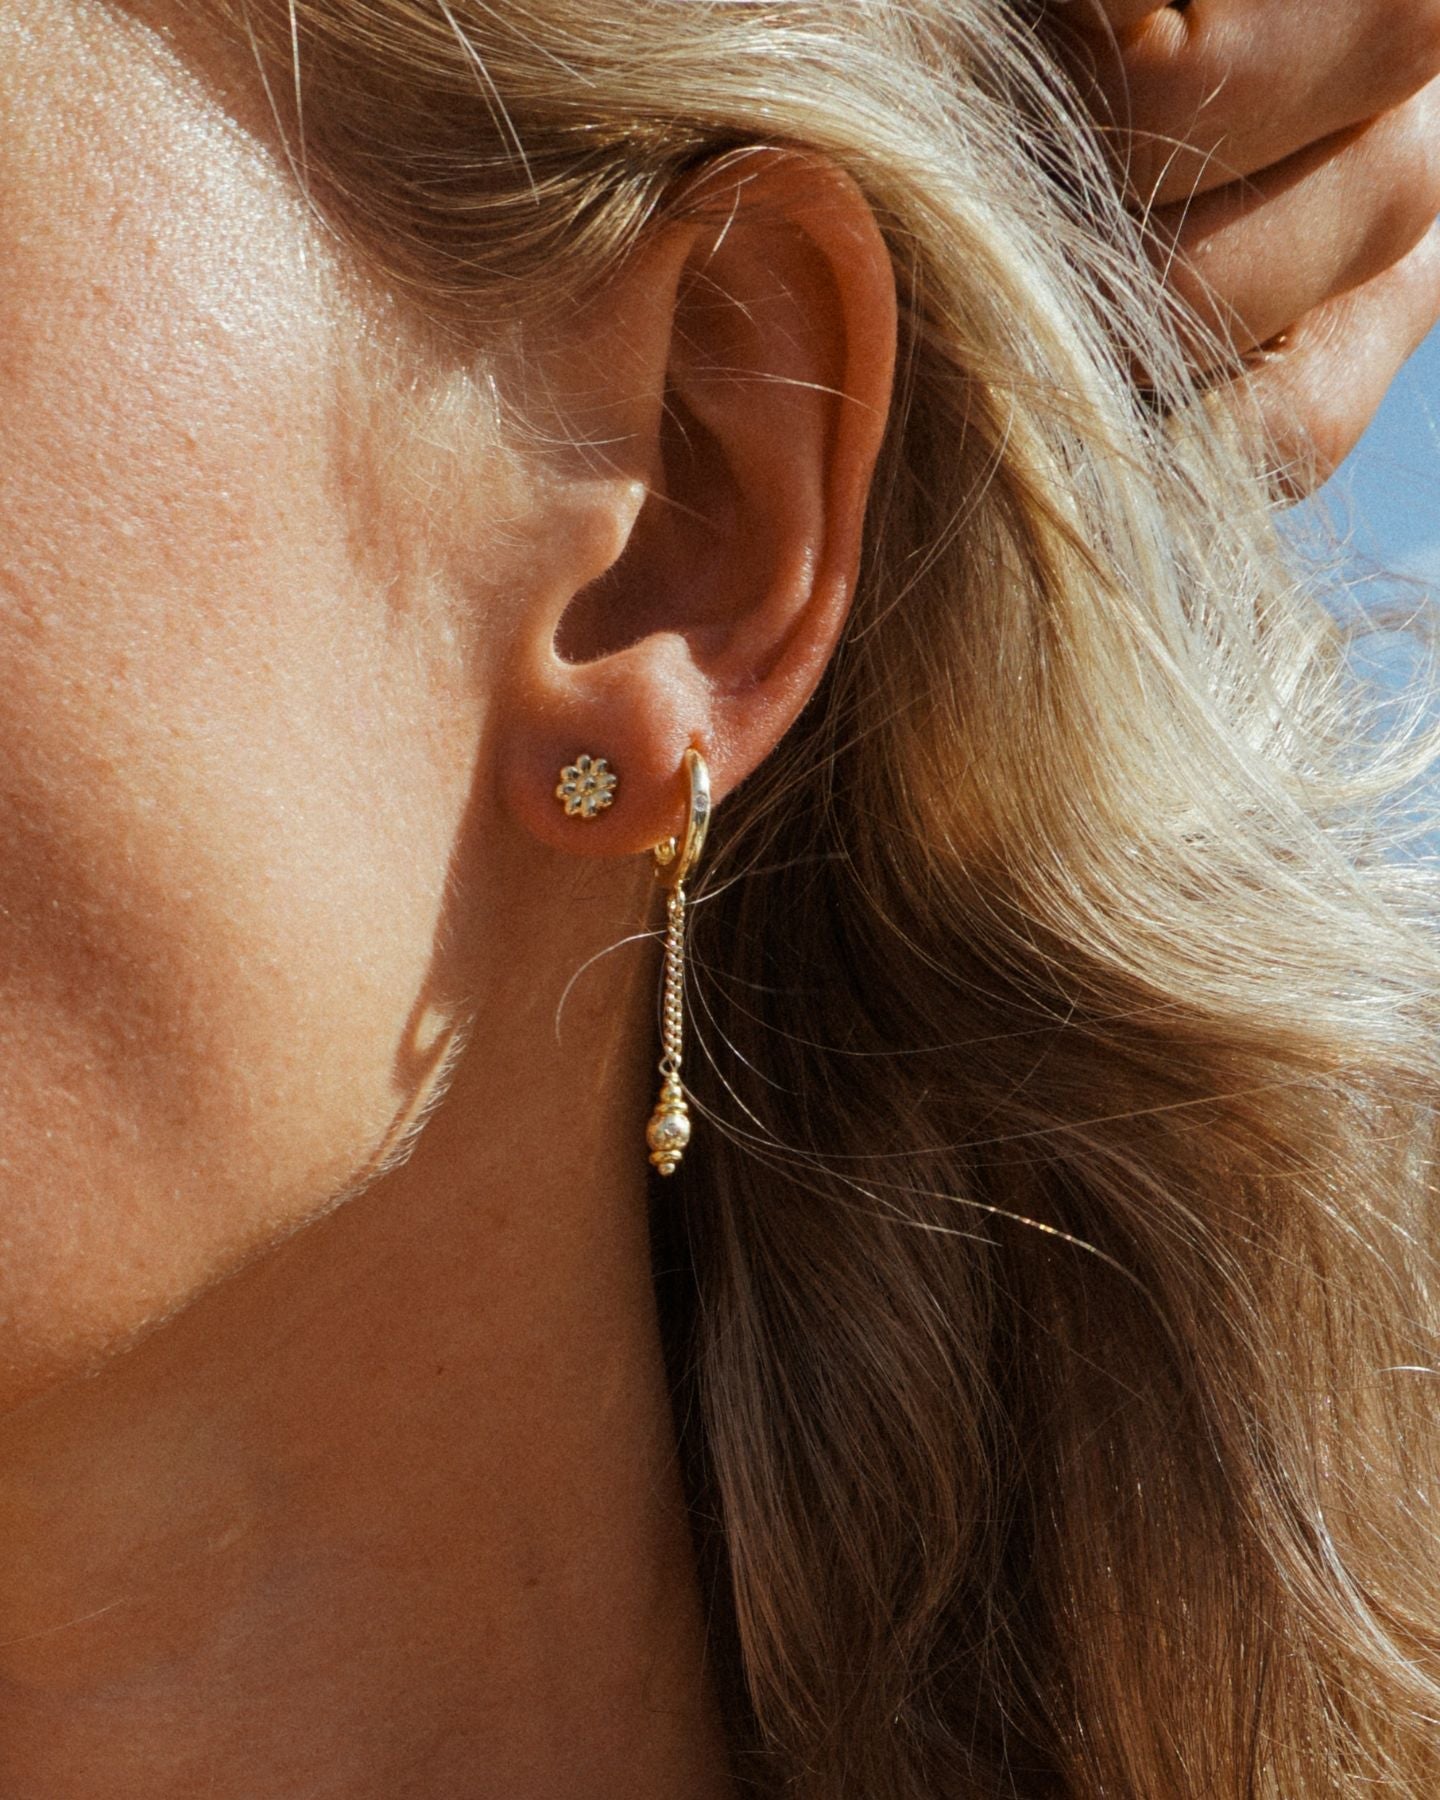 Delicate Rhapsodic Earrings Silver